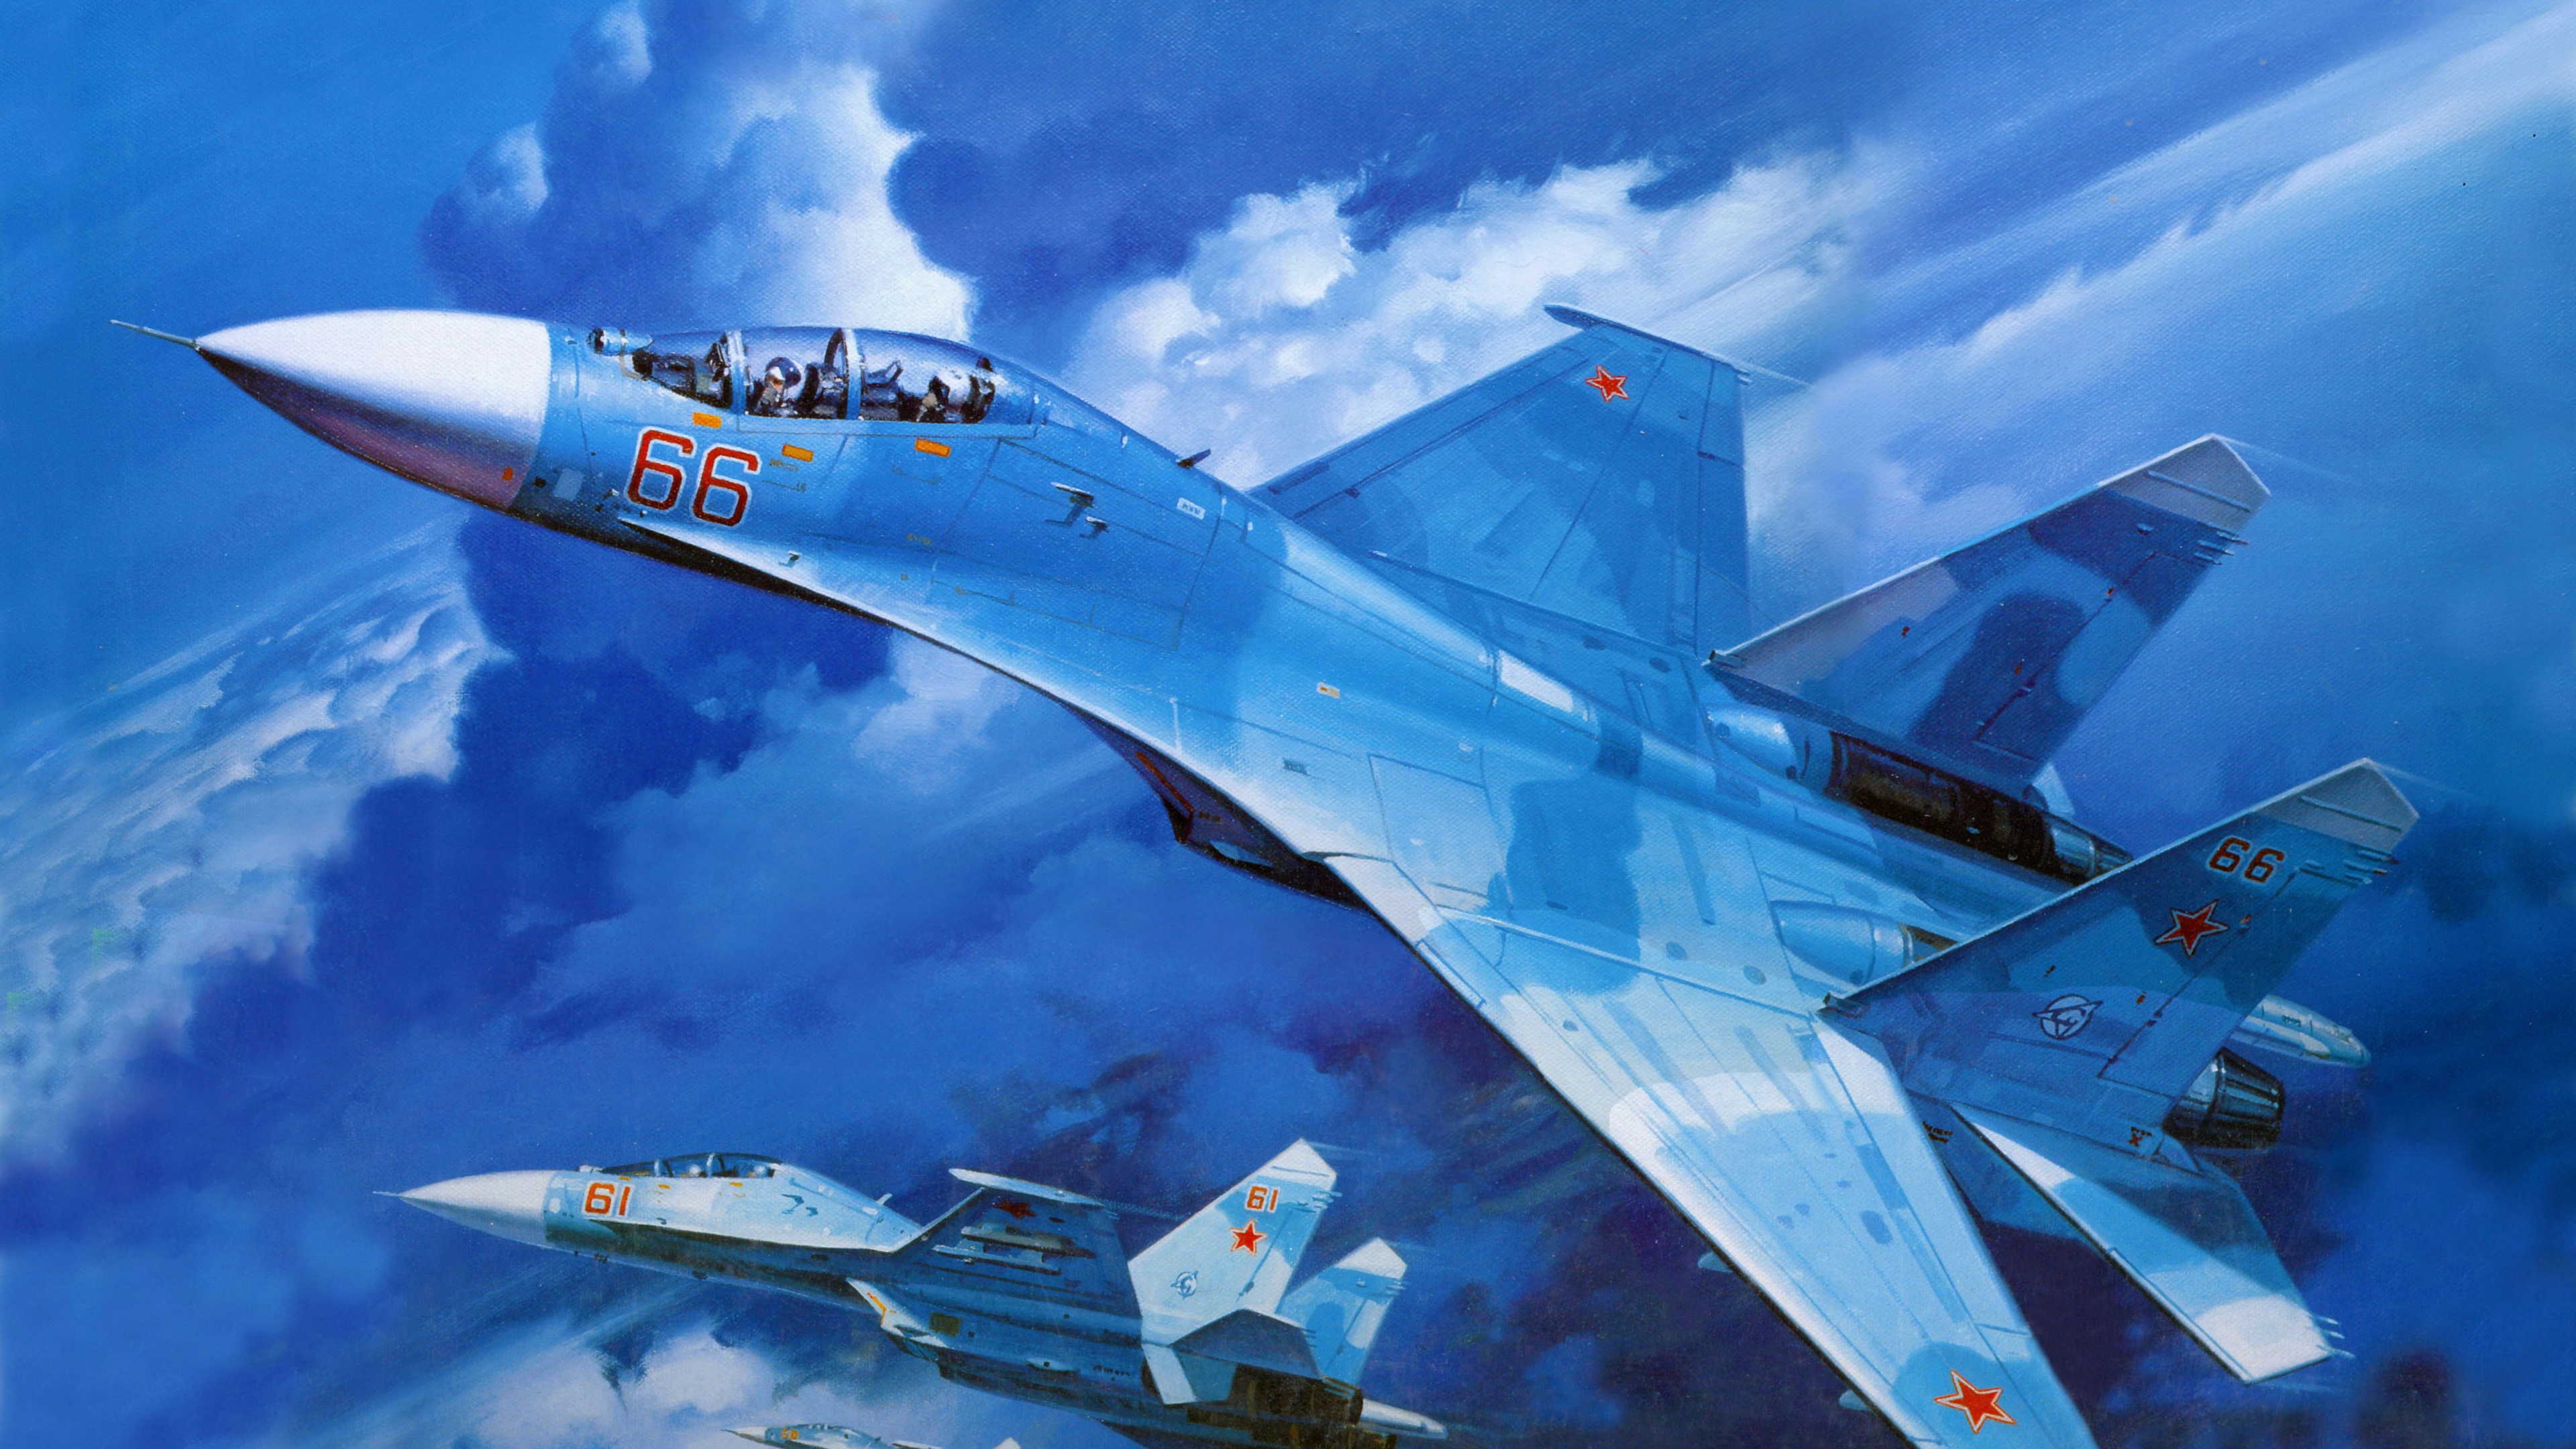 Weißes Und Blaues Düsenflugzeug Unter Blauem Himmel Tagsüber. Wallpaper in 3840x2160 Resolution